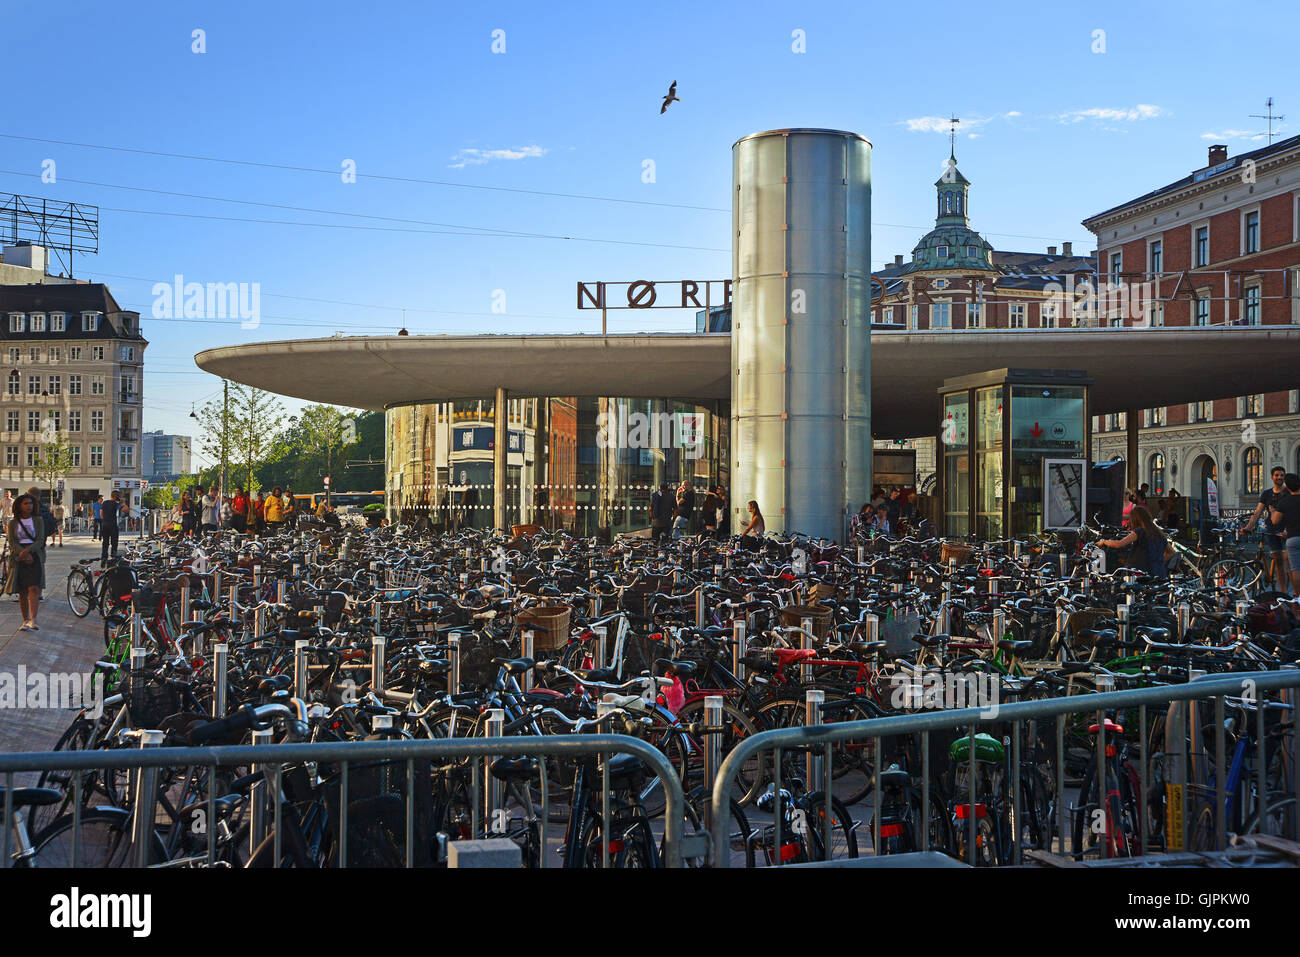 Copenhague, Danemark - 21 juillet 2016 : sur la place de stationnement des vélos à Copenhague Banque D'Images